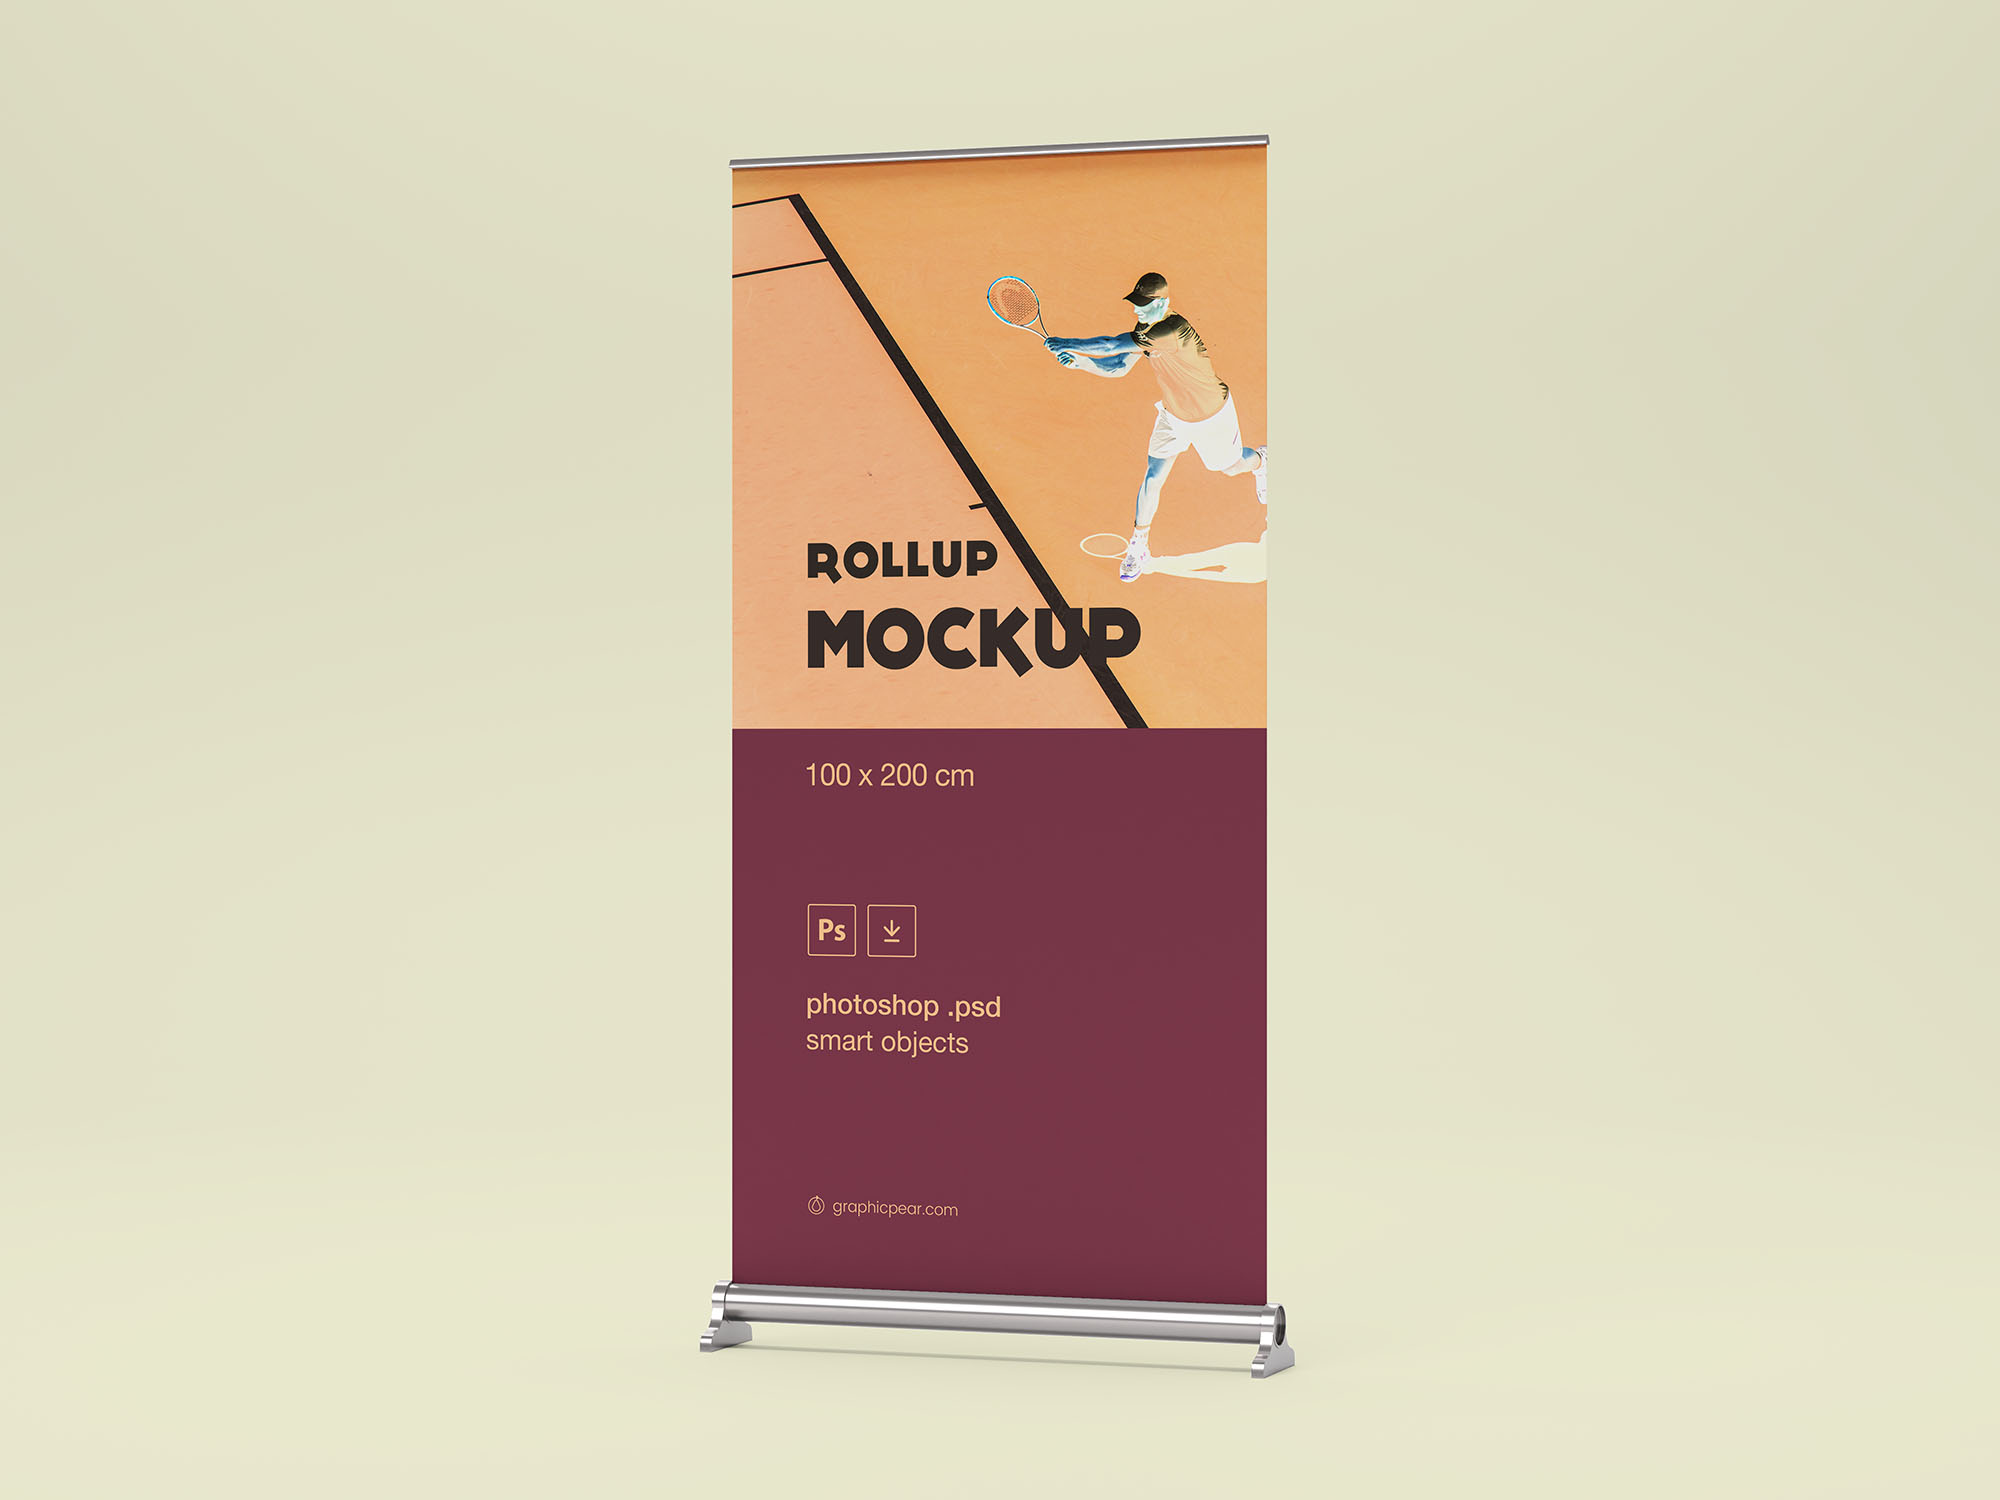 企业/品牌/店铺宣传X展架易拉宝广告设计效果图样机模板 Rollup Mockup 100 x 200cm插图(1)